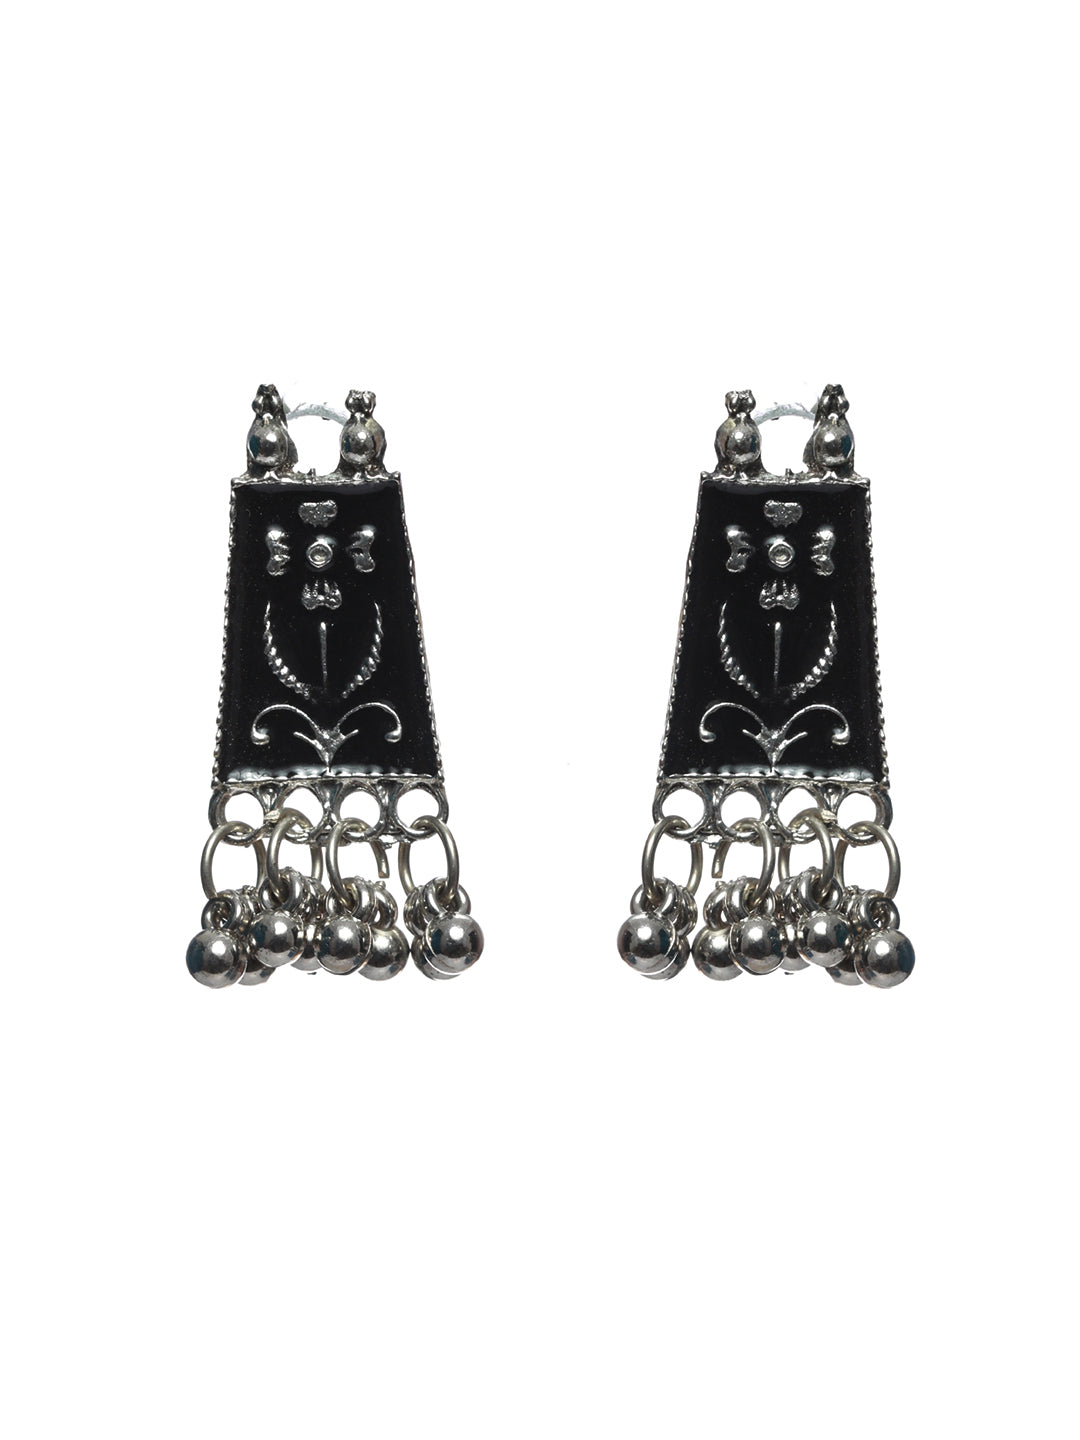 Priyaasi Black Floral Long Block Oxidised Silver Jewellery Set